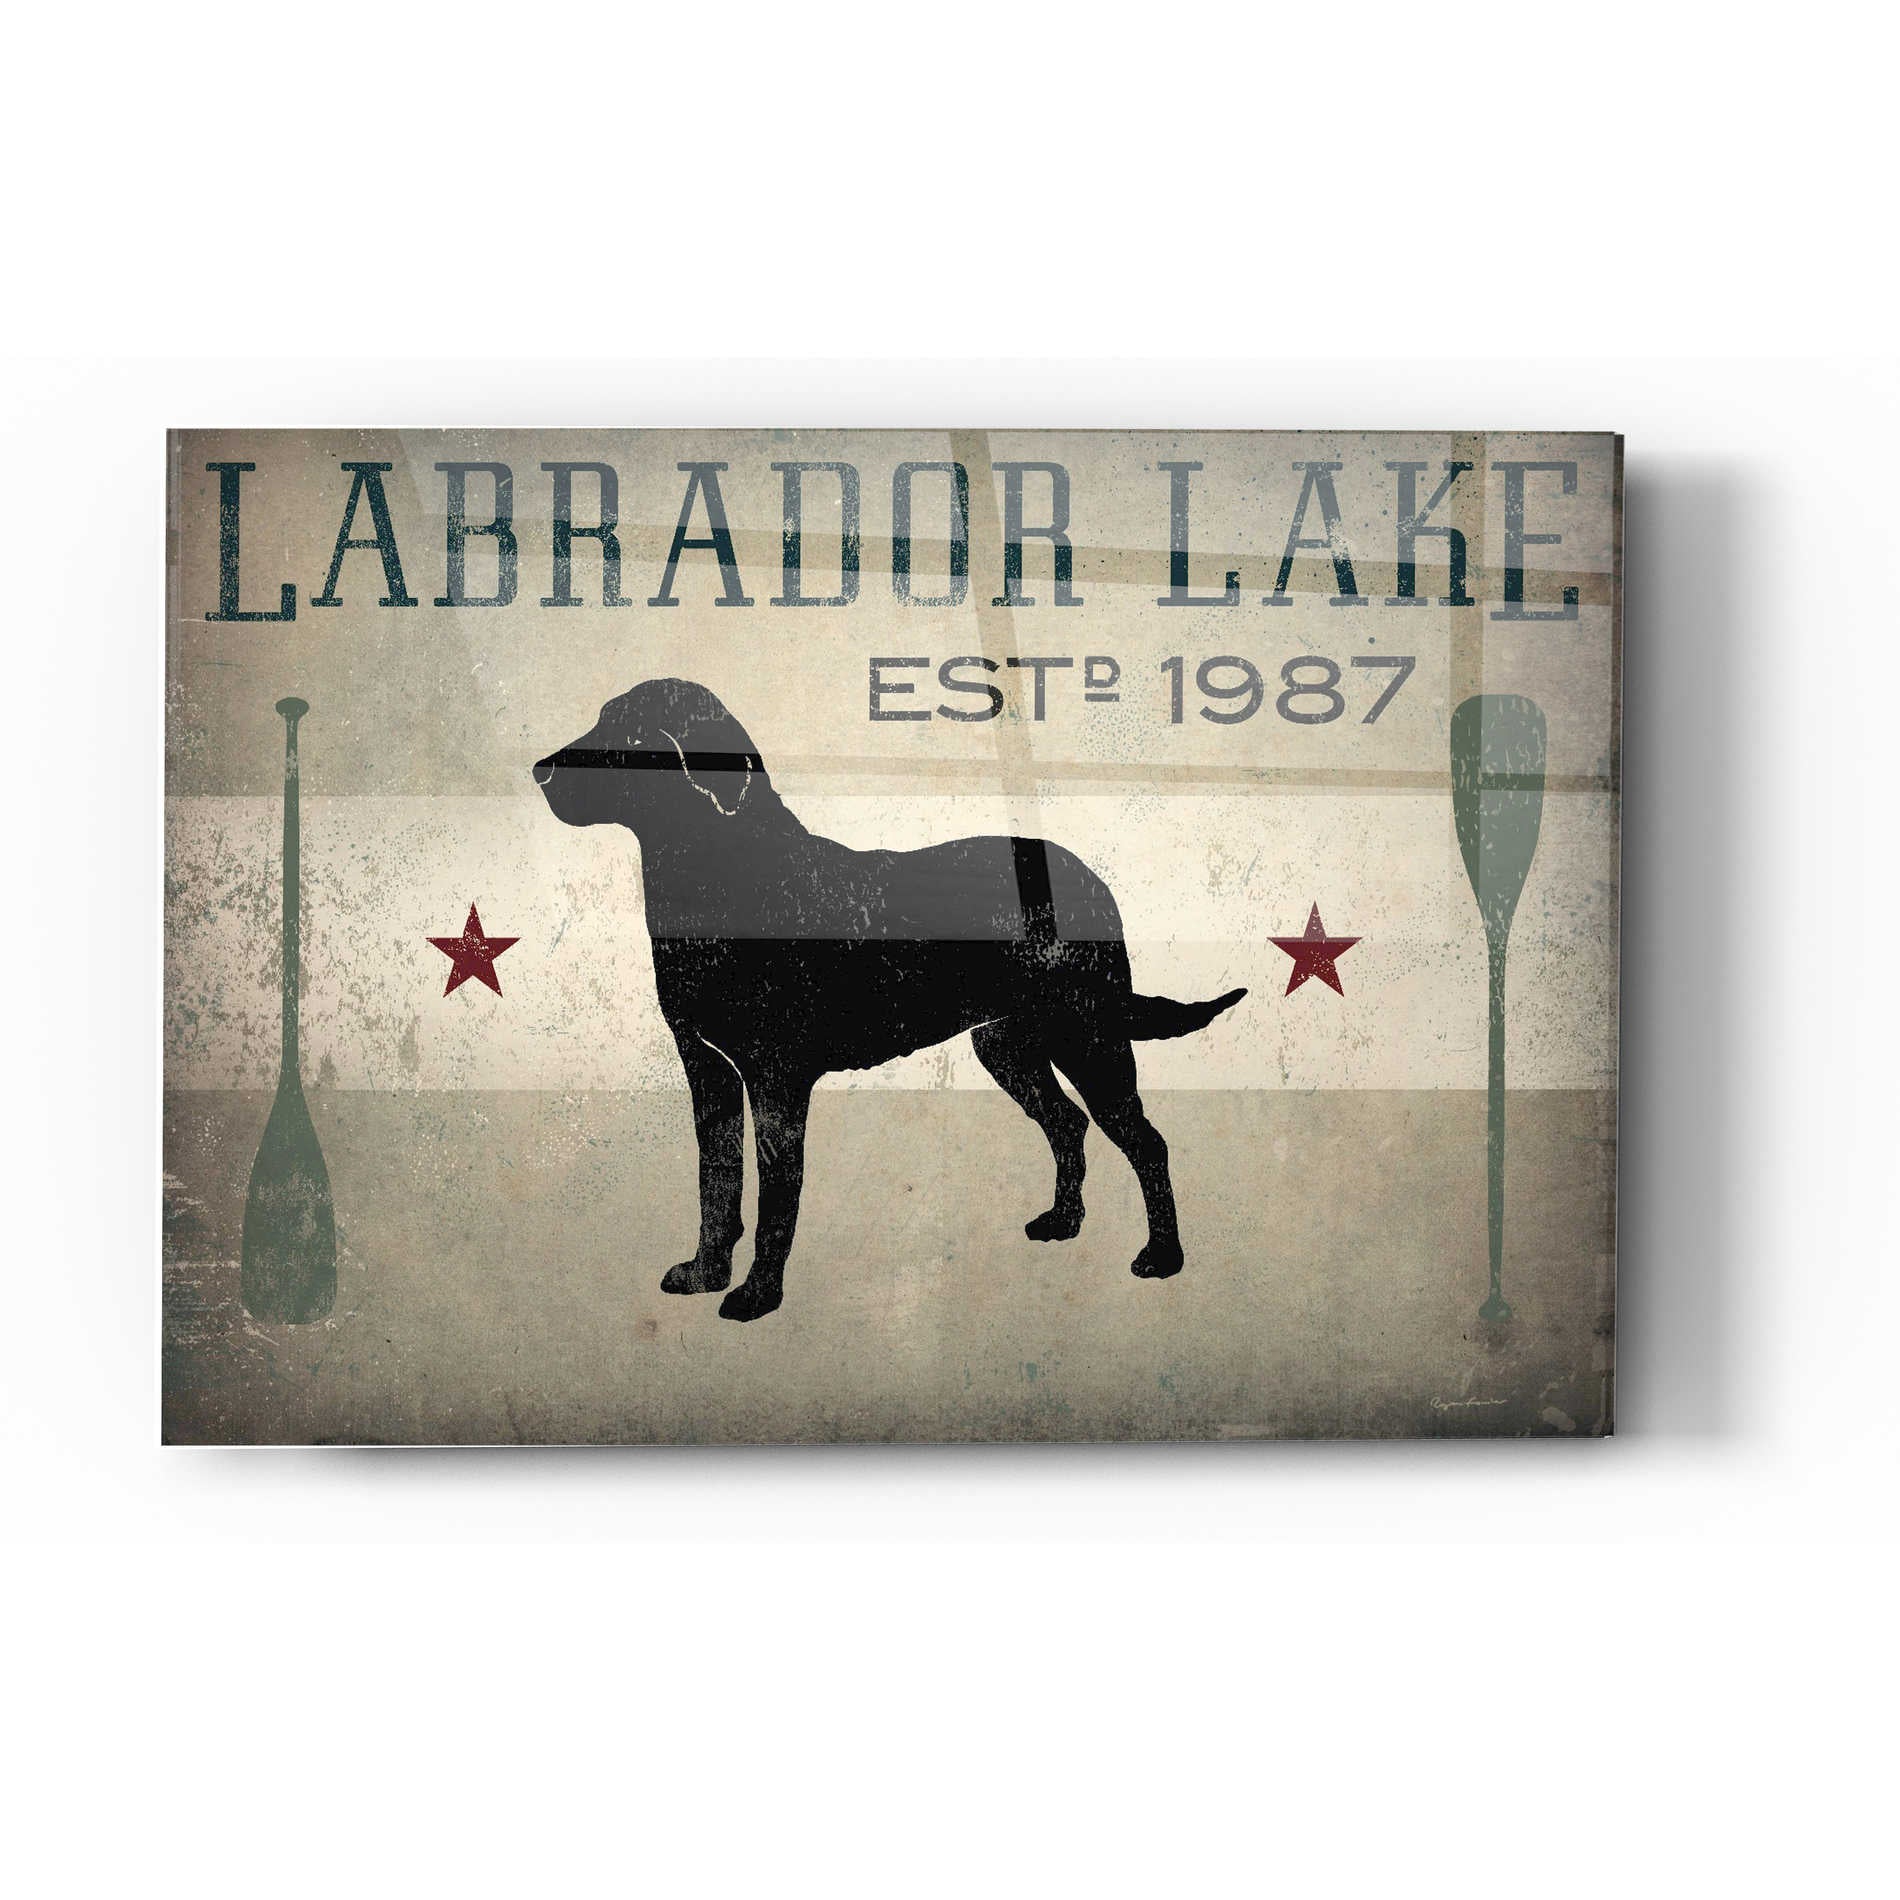 Epic Art 'Labrador Lake' by Ryan Fowler, Acrylic Glass Wall Art,12x16